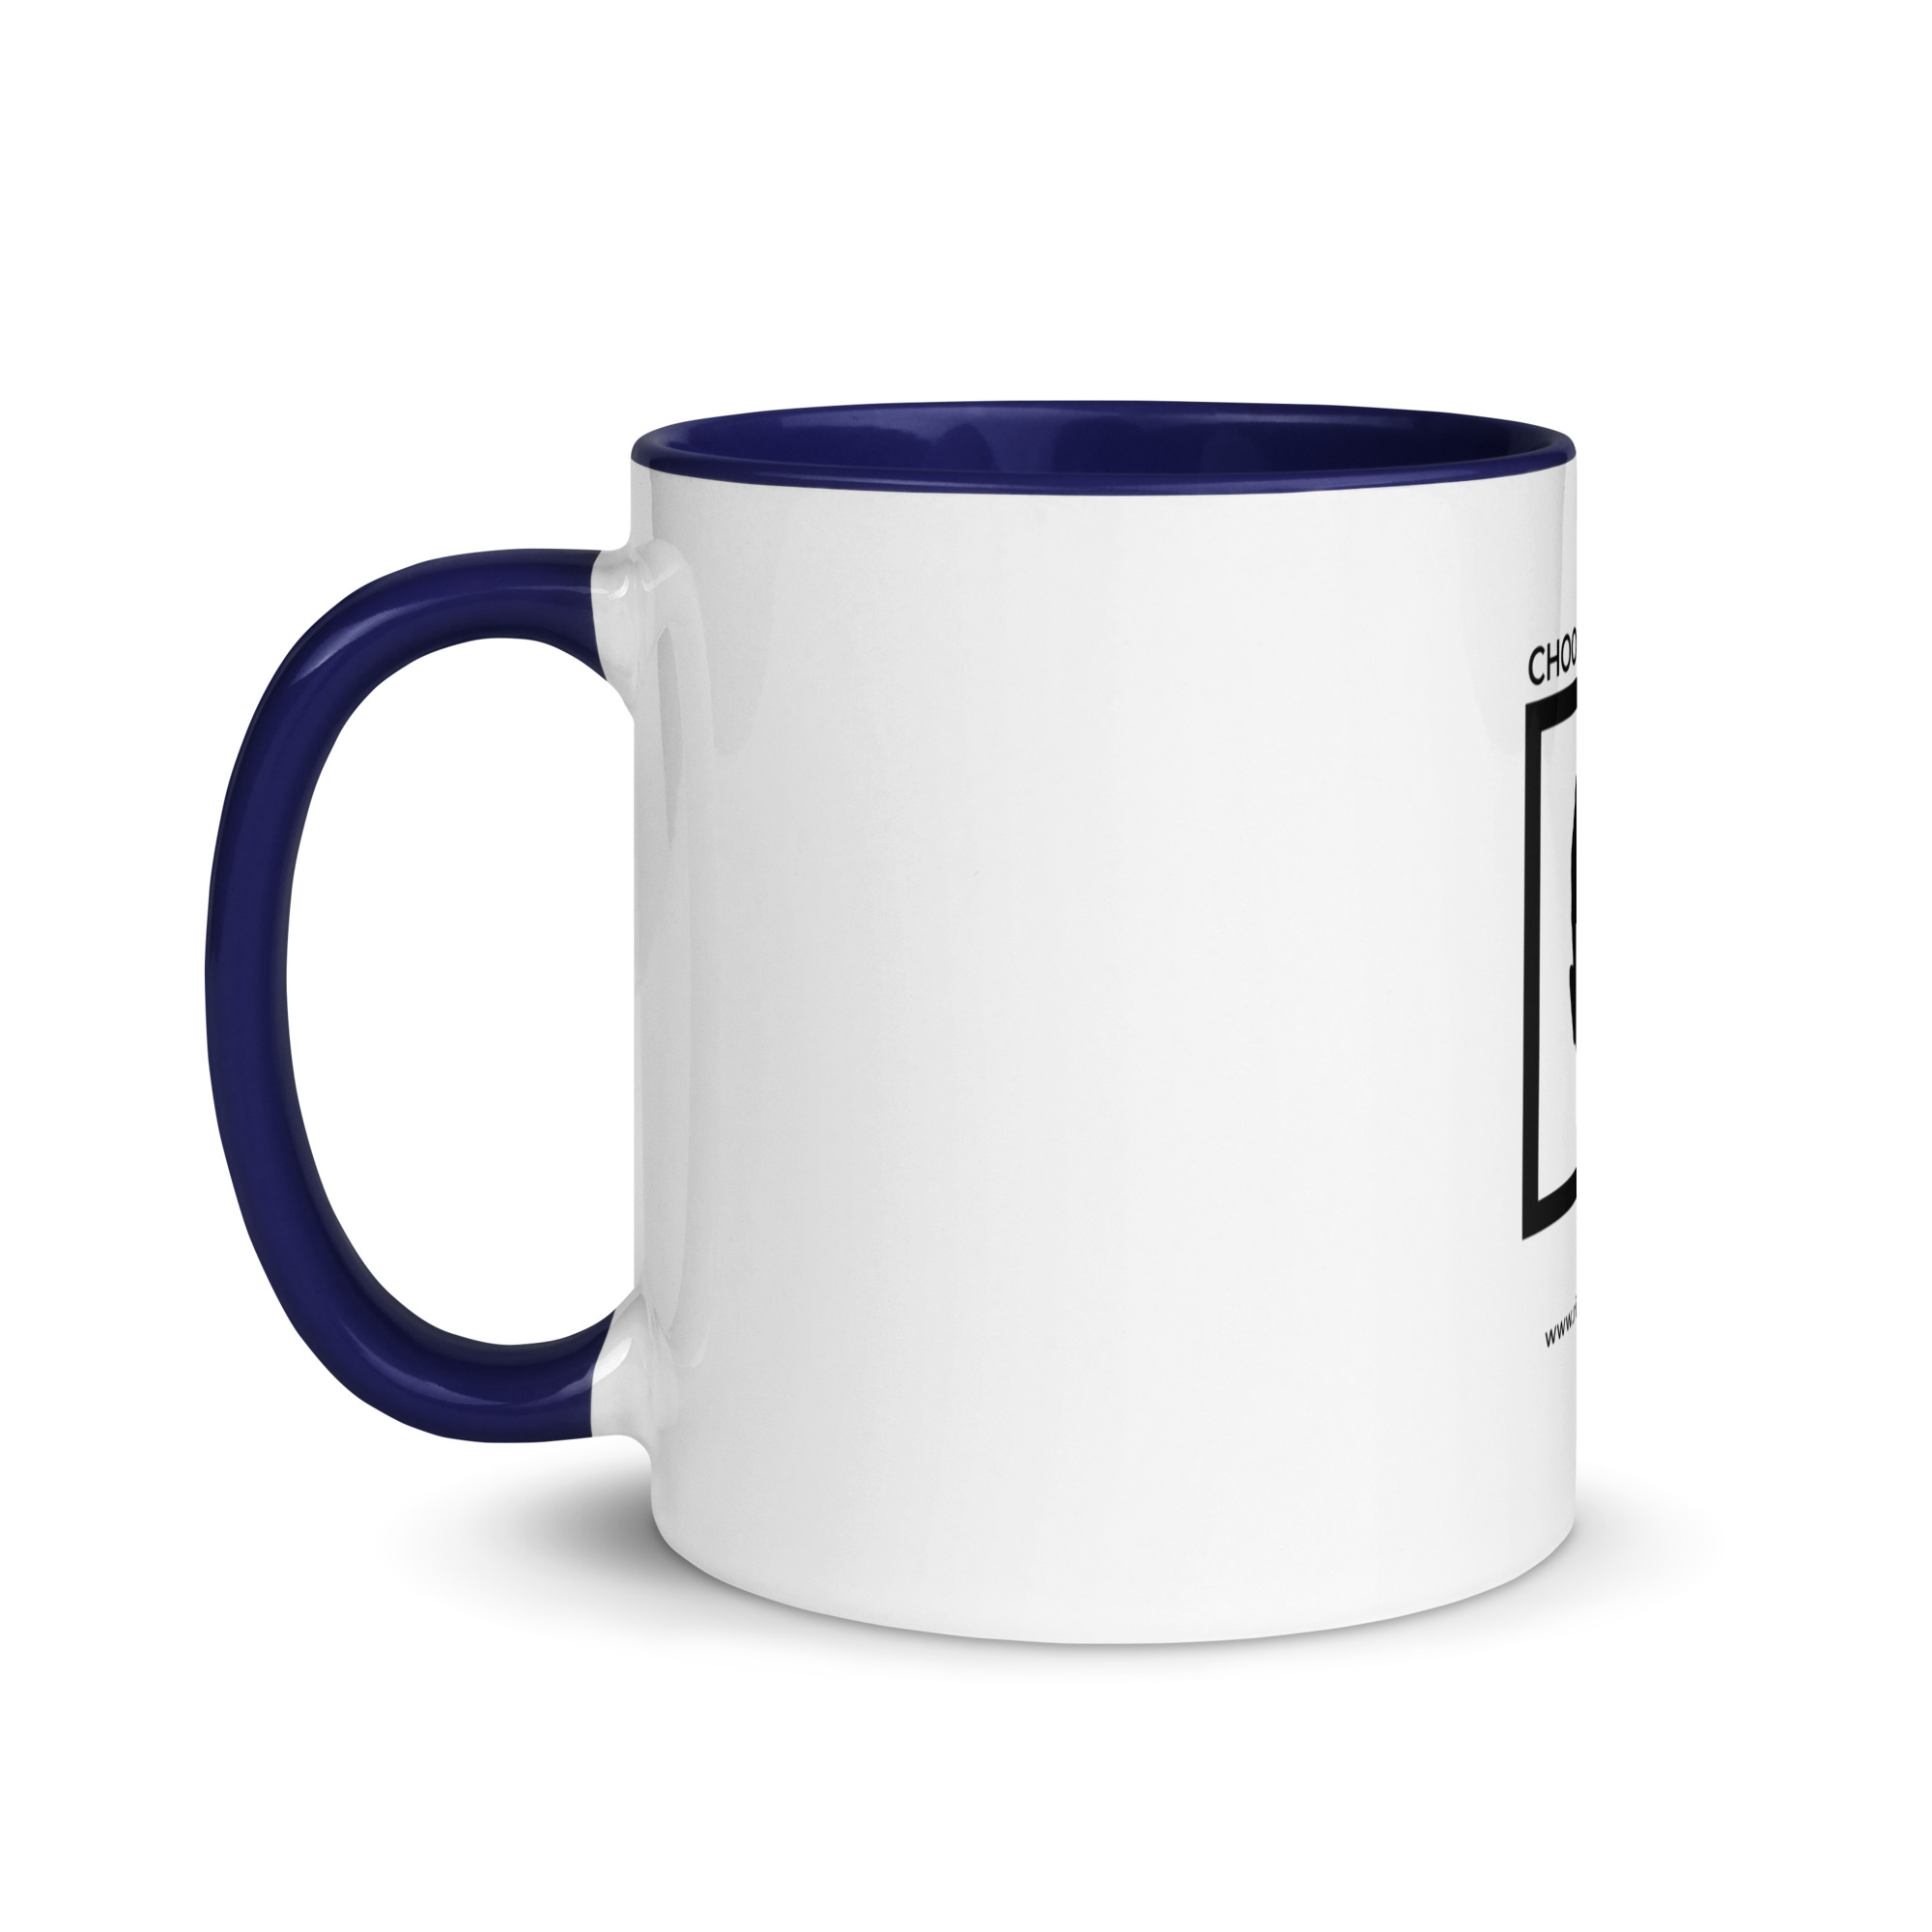 white-ceramic-mug-with-color-inside-dark-blue-11-oz-left-6522a1a403b54.jpg